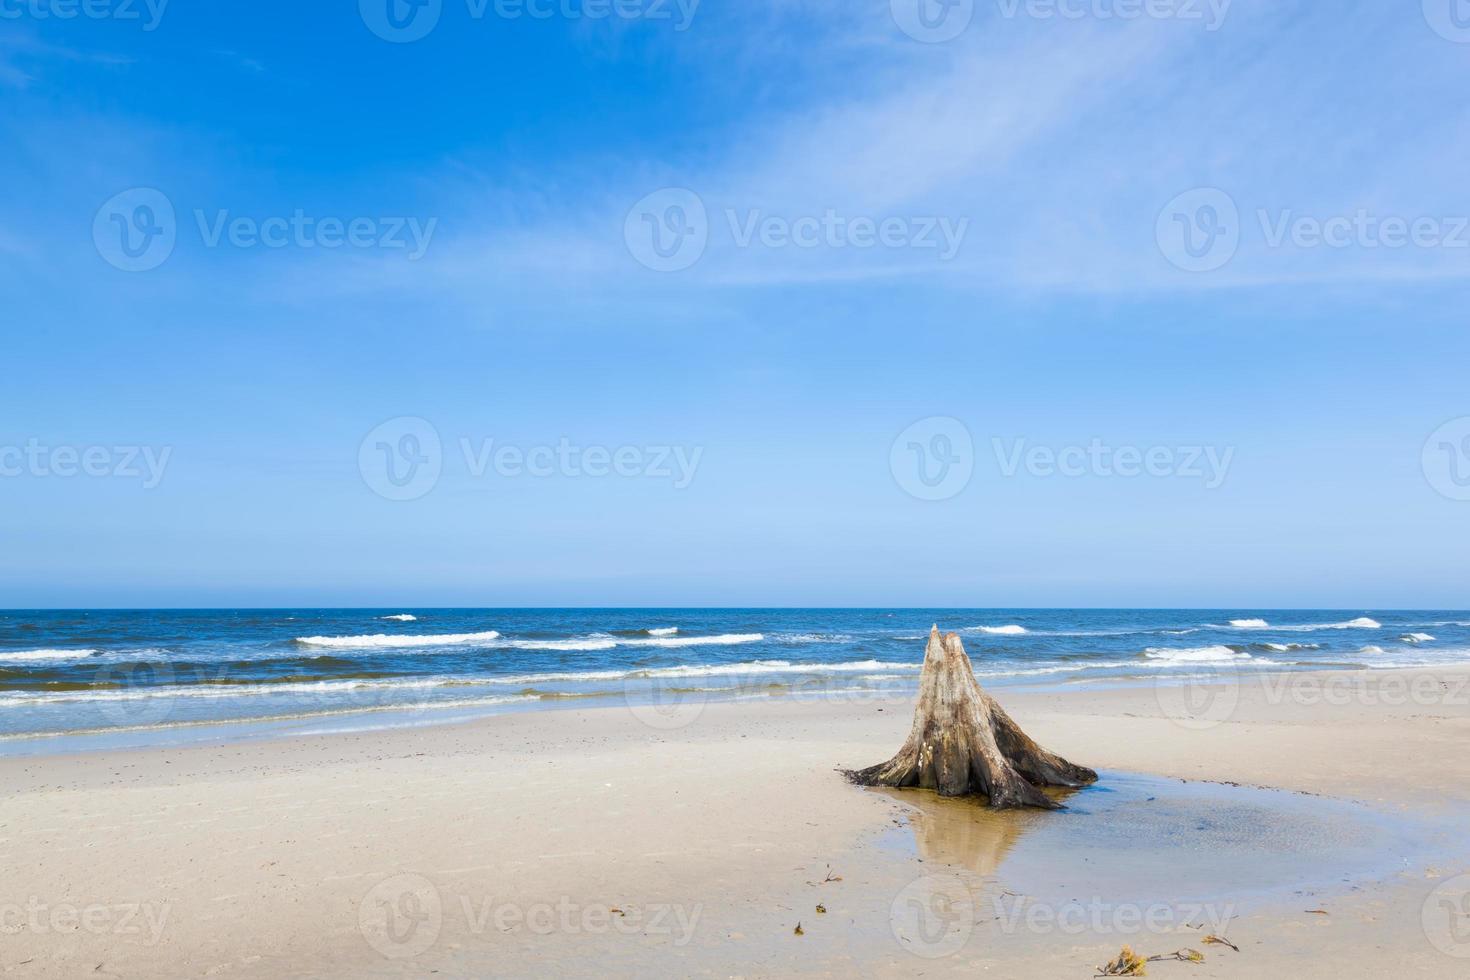 Troncos de árvore de 3000 anos na praia após a tempestade. parque nacional de slowinski, mar báltico, polônia foto